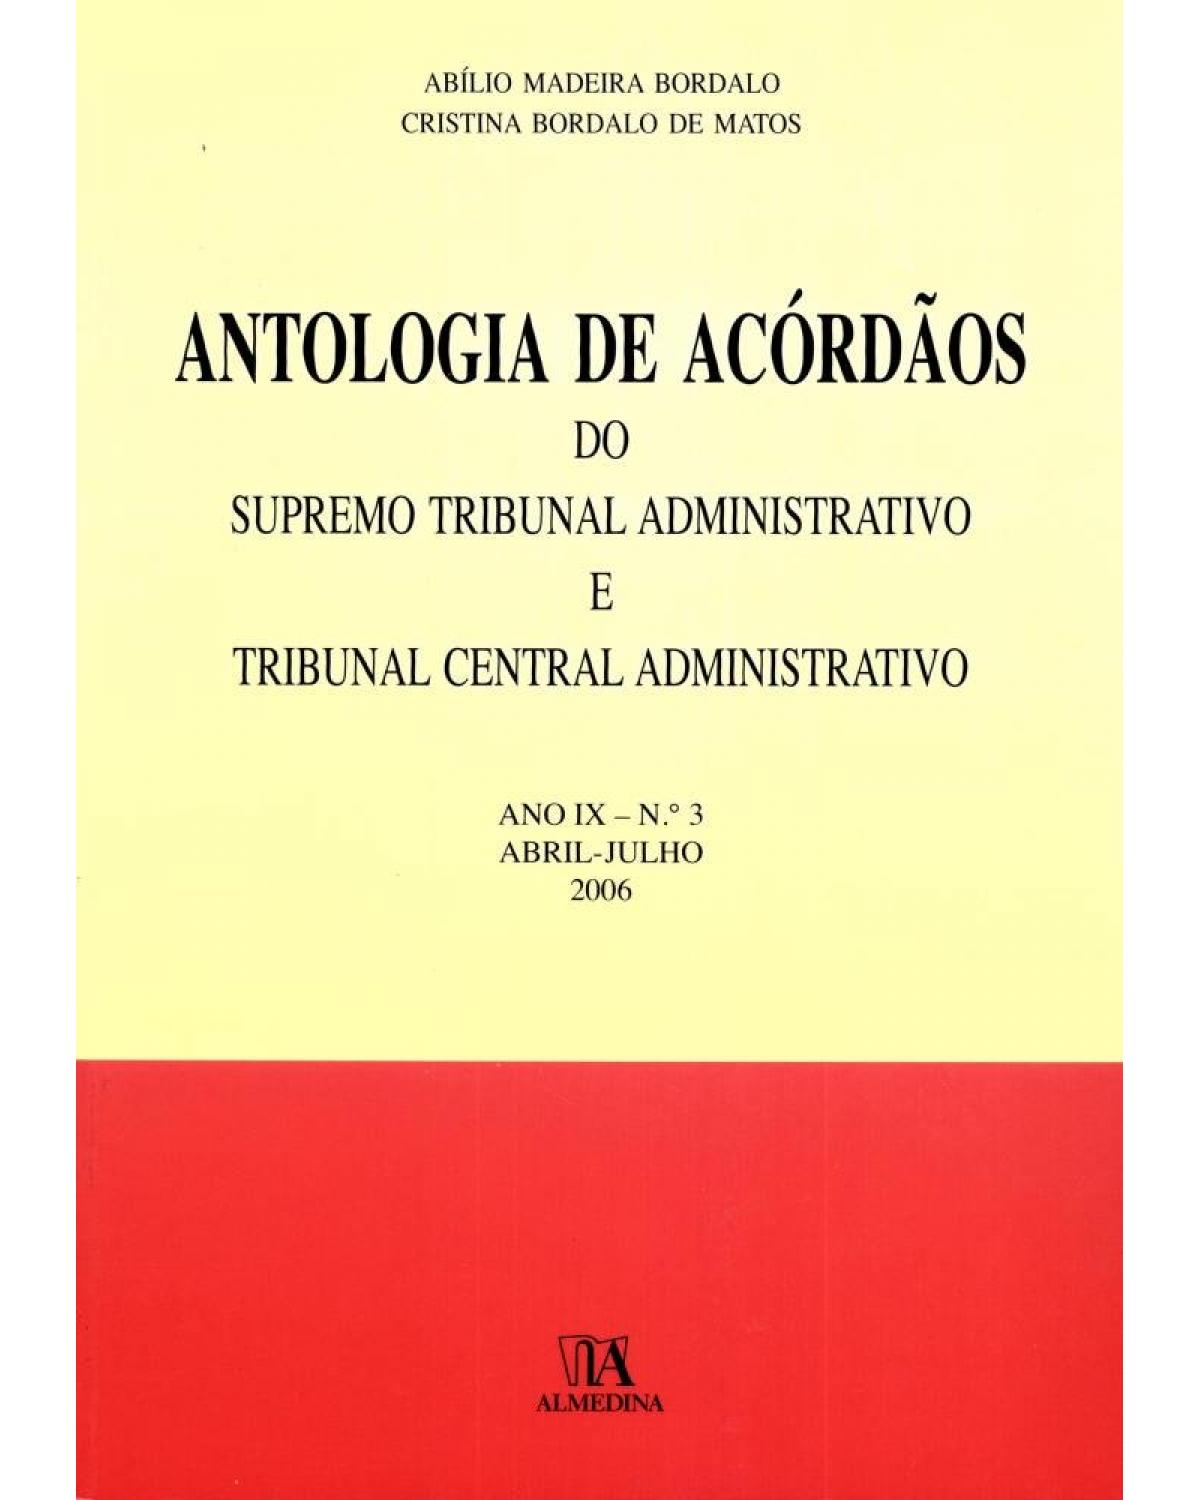 Antologia de acórdãos do supremo tribunal administrativo e tribunal central administrativo - Volume 3: ano IX - Abril-julho 2006 - 1ª Edição | 2007